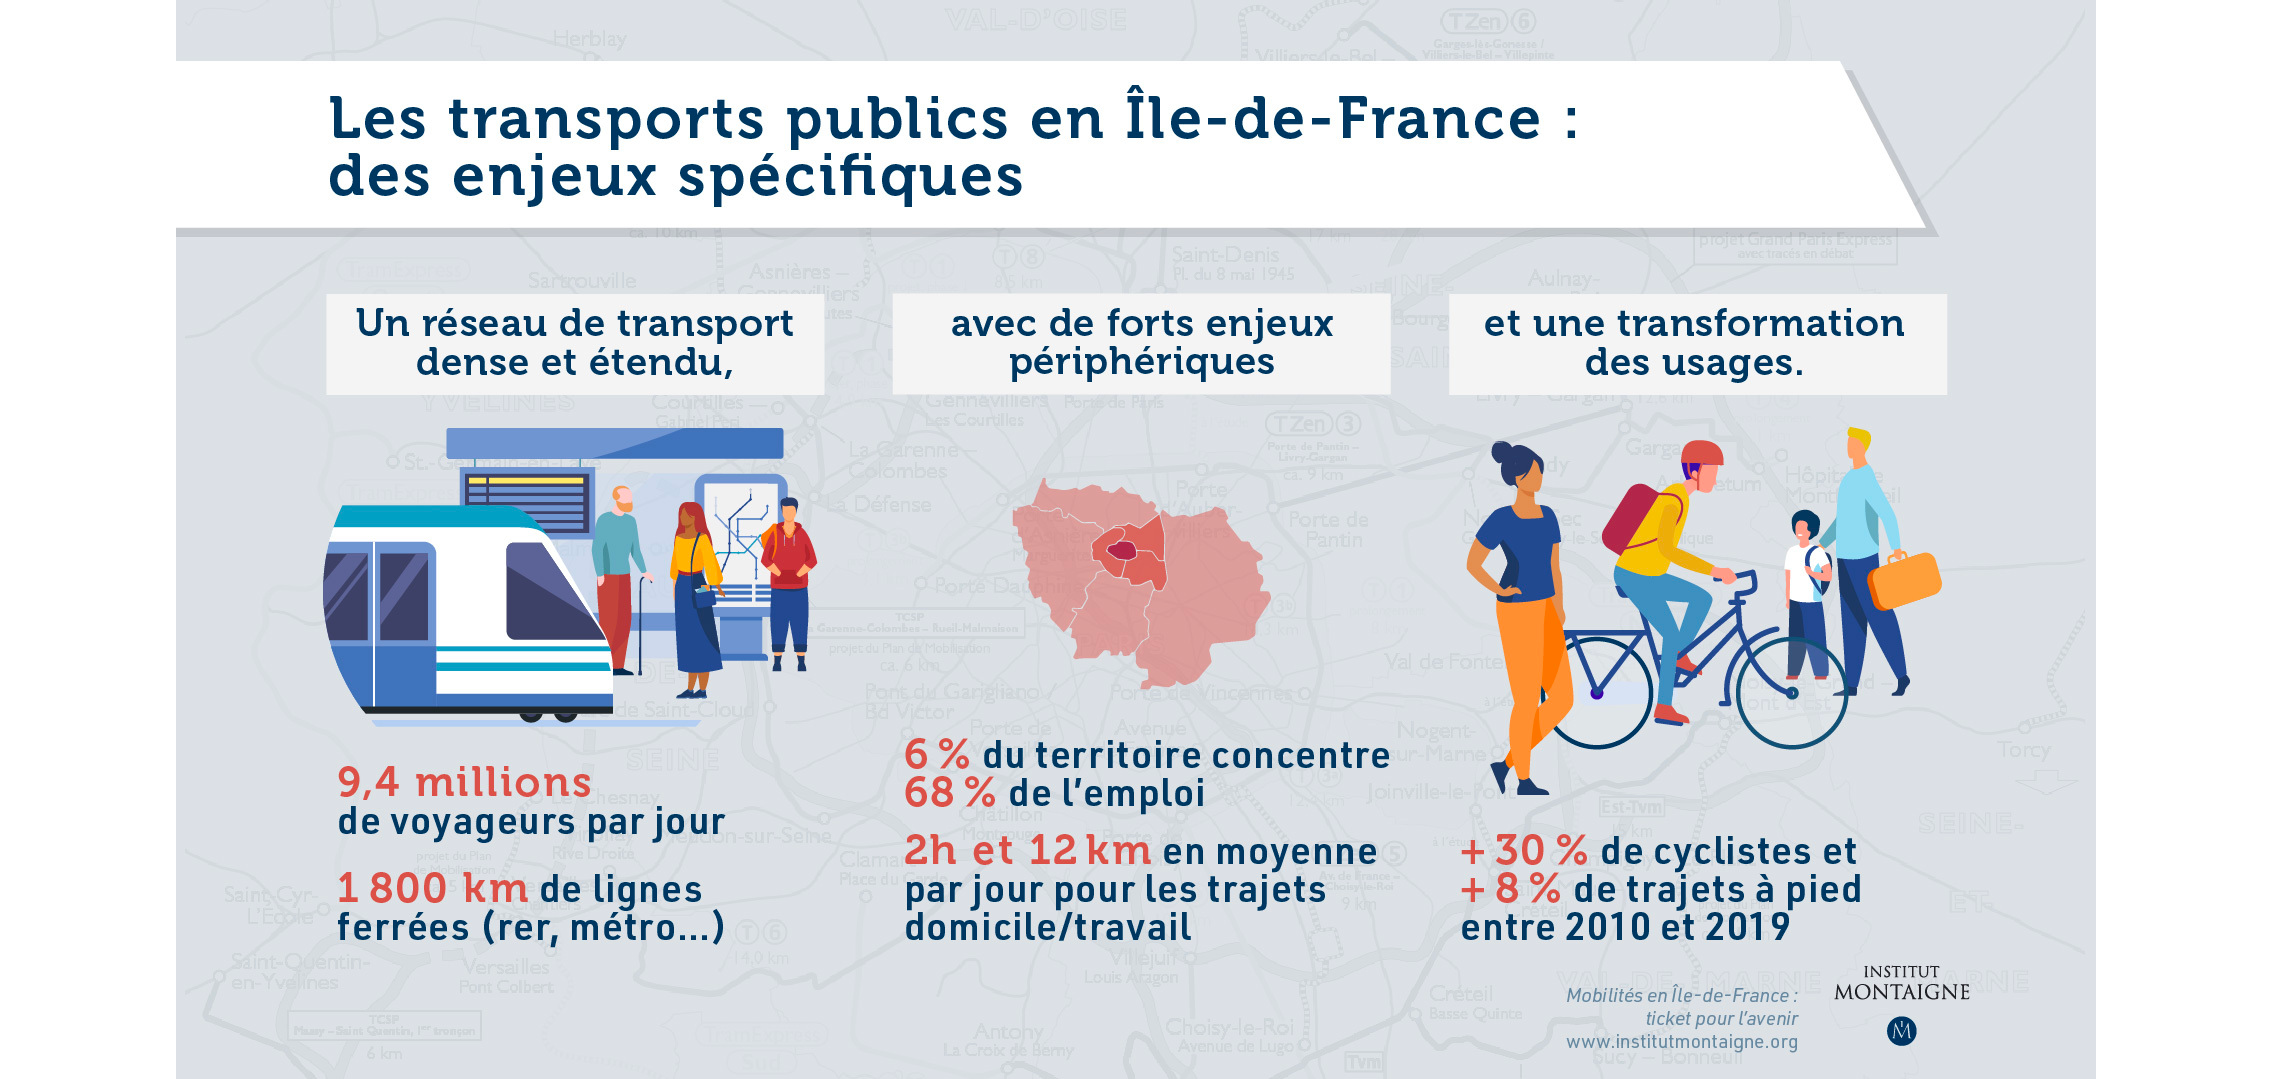 Les transports publics en Île-de-France : des enjeux spécifiques